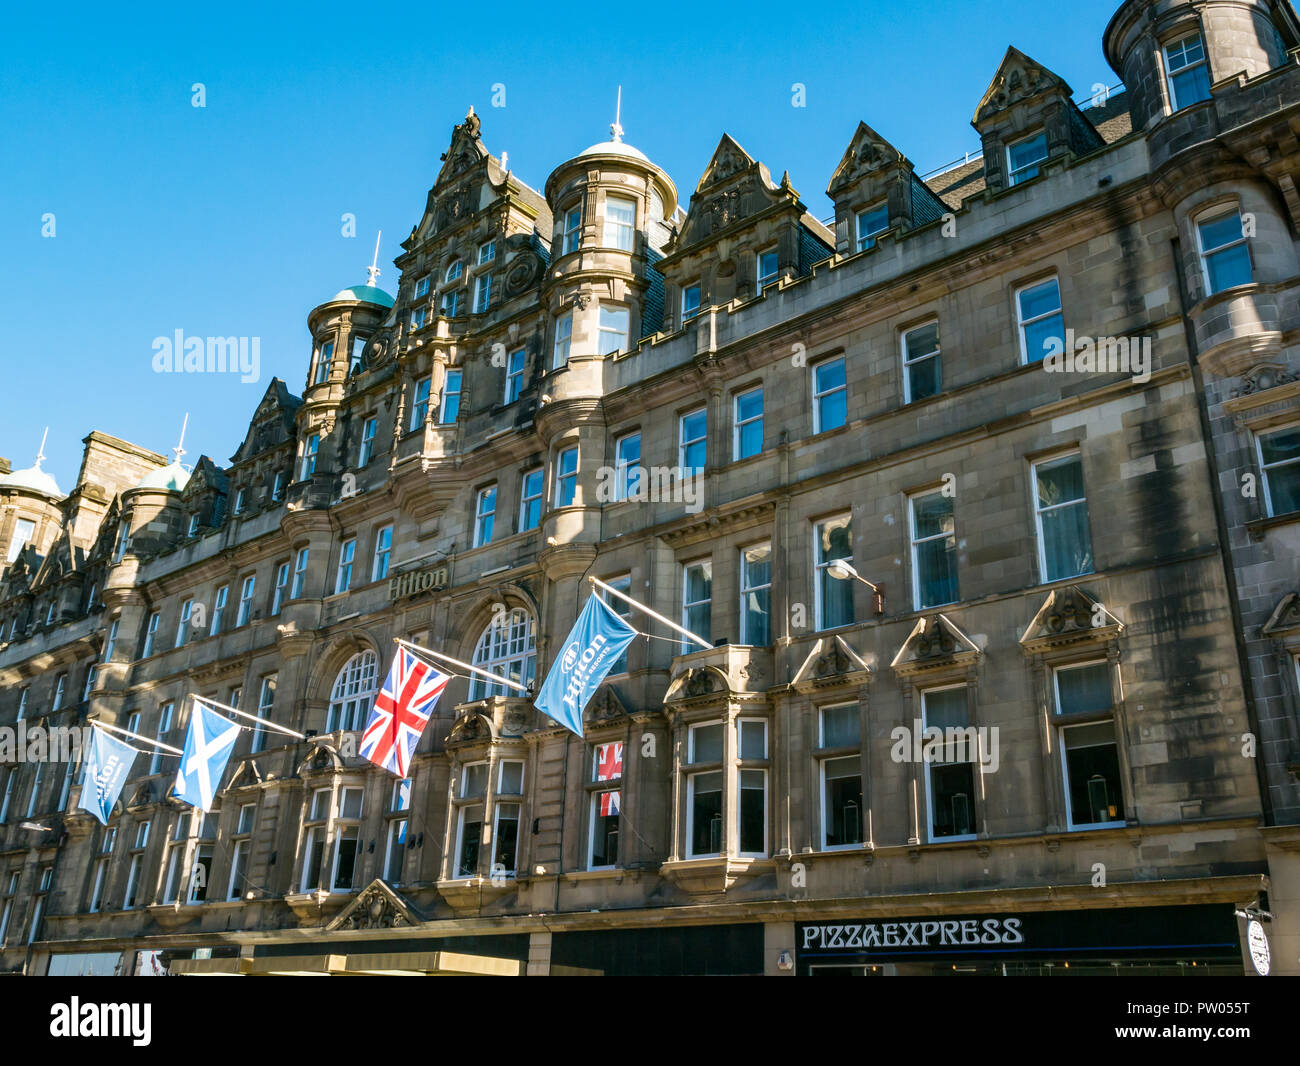 Grande demeure de style baronial écossais bâtiment maintenant Hilton Hôtel Carlton, avec Pizza Express signe, North Bridge, Edinburgh, Scotland, UK avec des drapeaux Banque D'Images